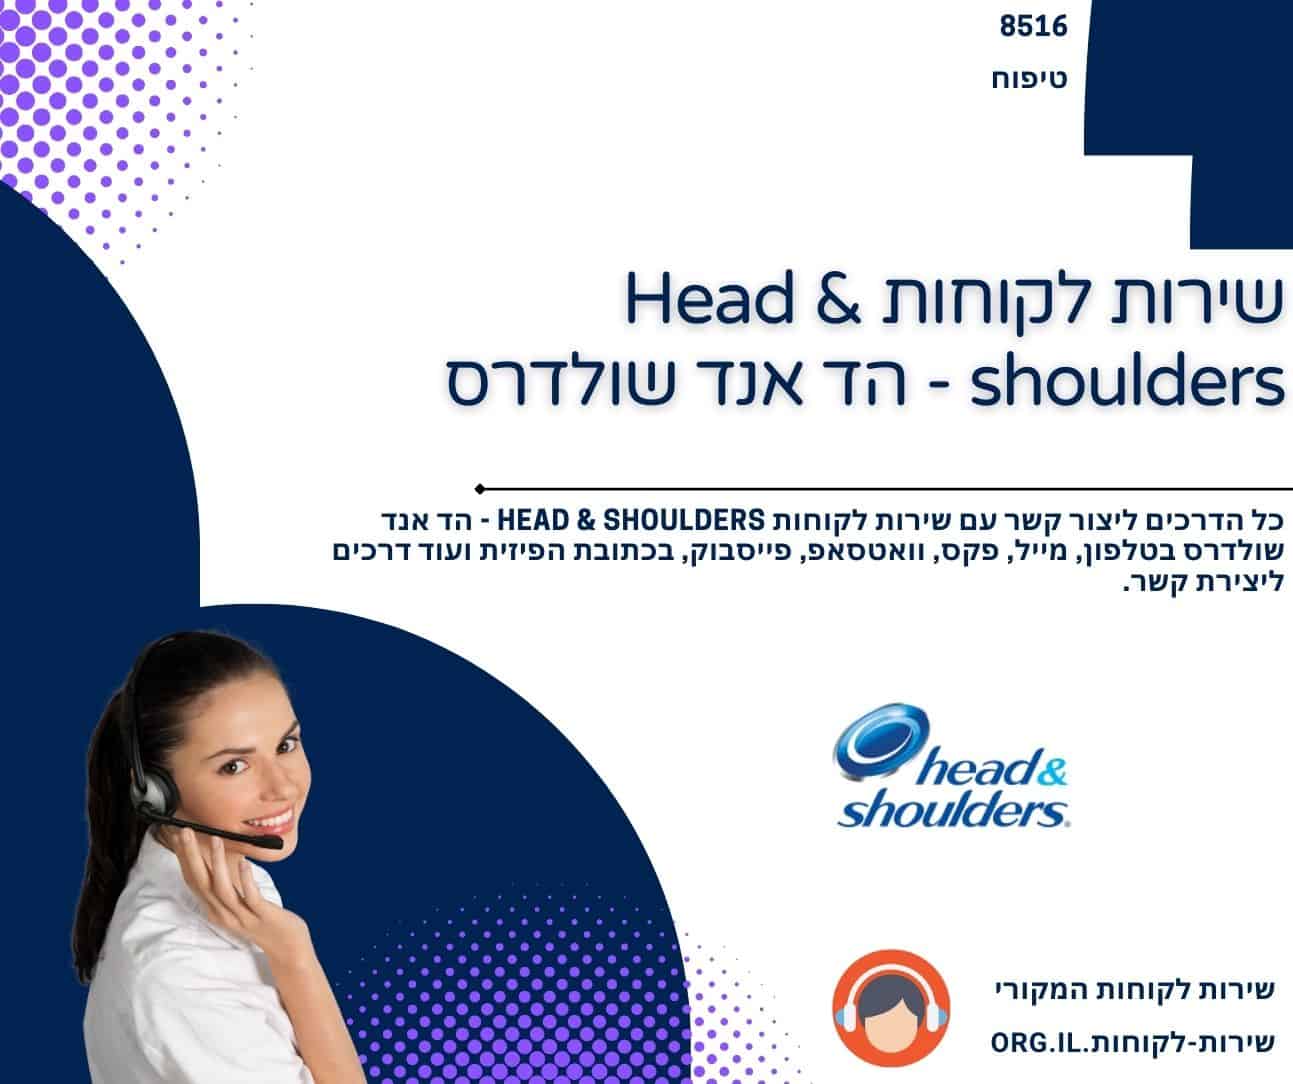 שירות לקוחות Head & shoulders - הד אנד שולדרס